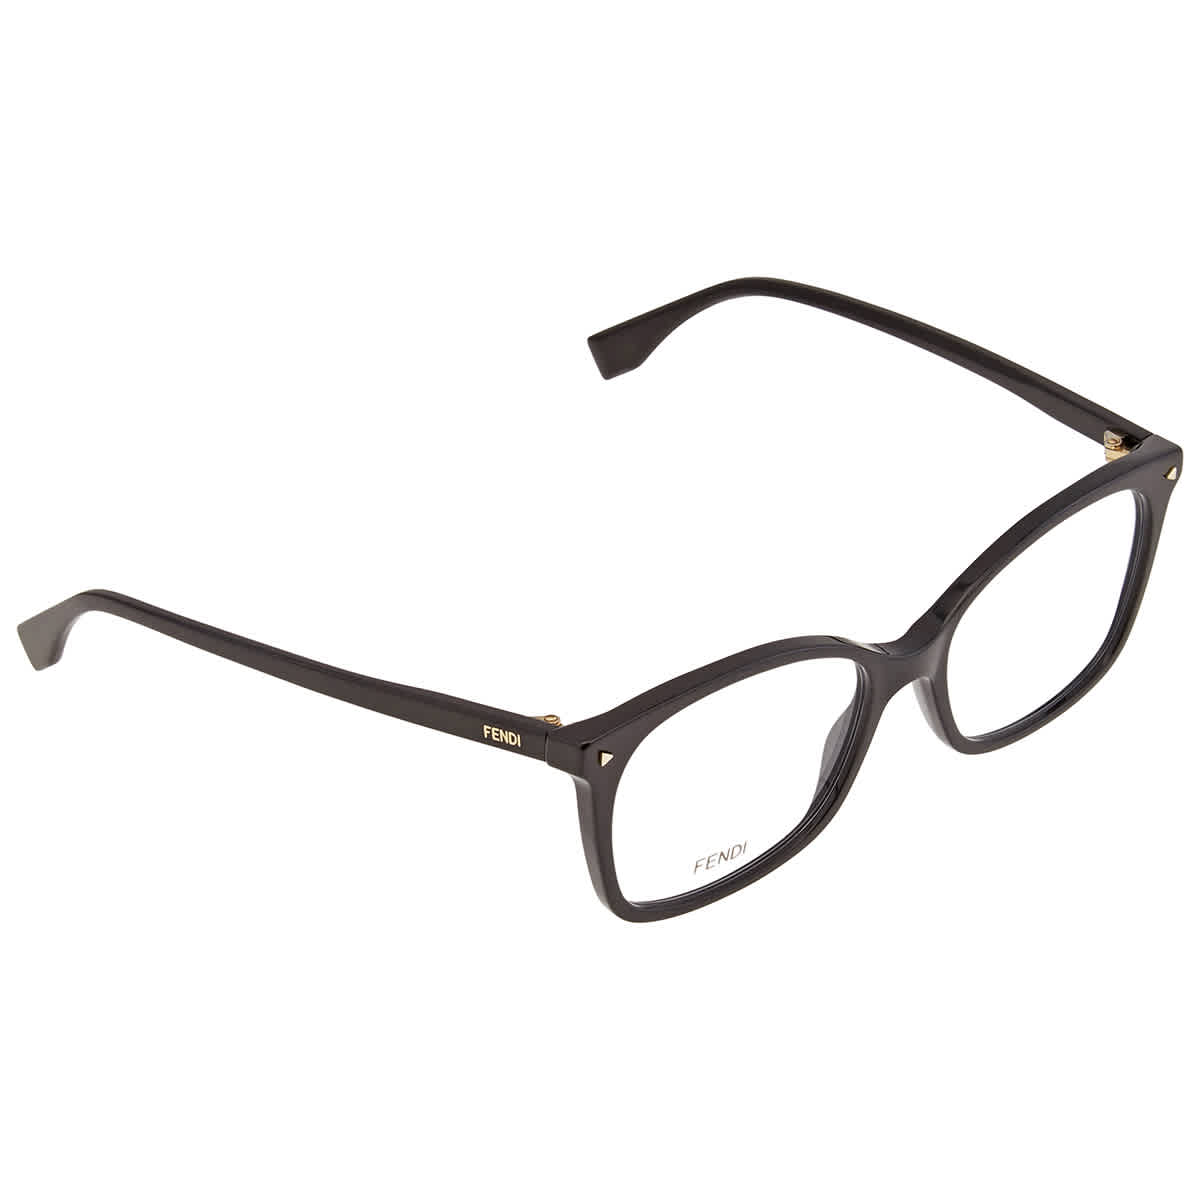 Fendi Square Eyeglasses Ff 0414 0807 00 53